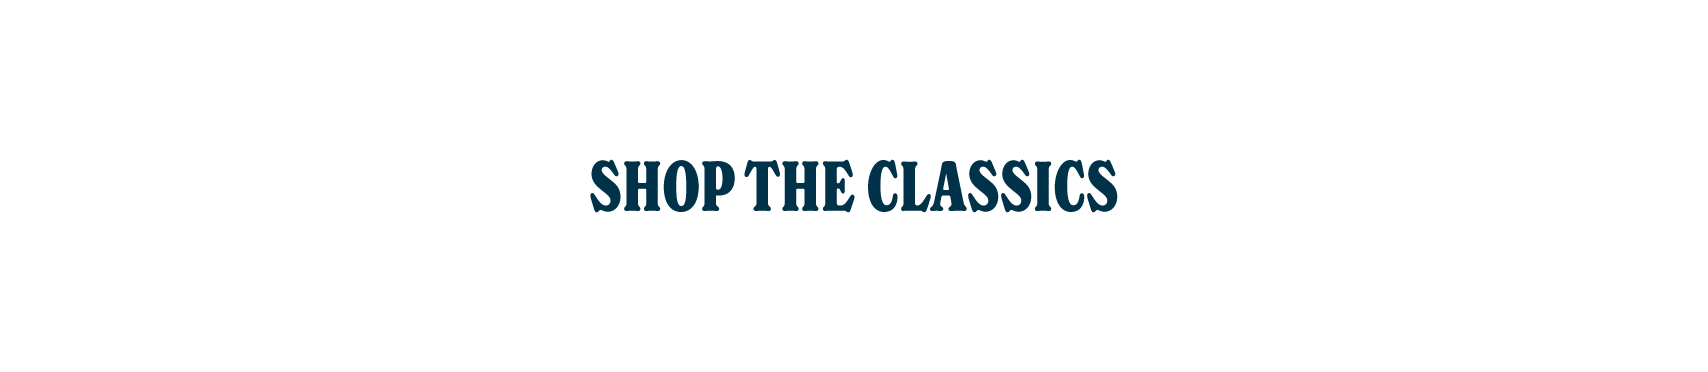 SHOP THE CLASSICS